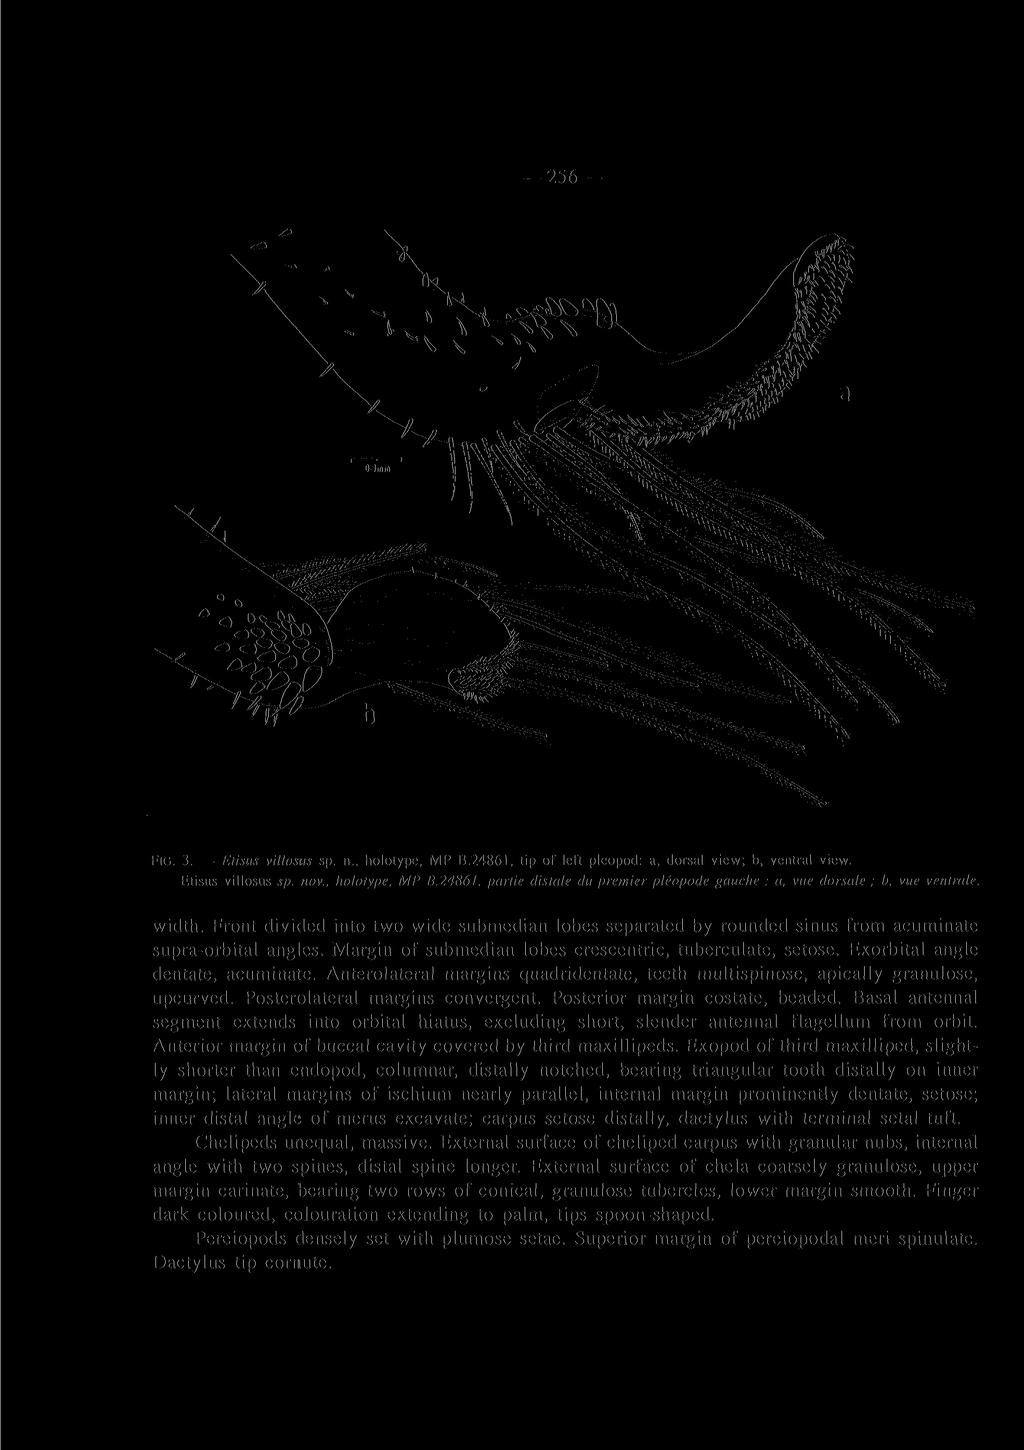 256 r "fab FIG. 3. Etisus villosus sp. n., holotype, MP B.24861, tip of left pleopod: a, dorsal view; b, ventral view. Etisus villosus sp. nov., holotype, MP B.24861, partie distale du premier pleopode gauche : a, vue dorsale ; b, vue ventrale.